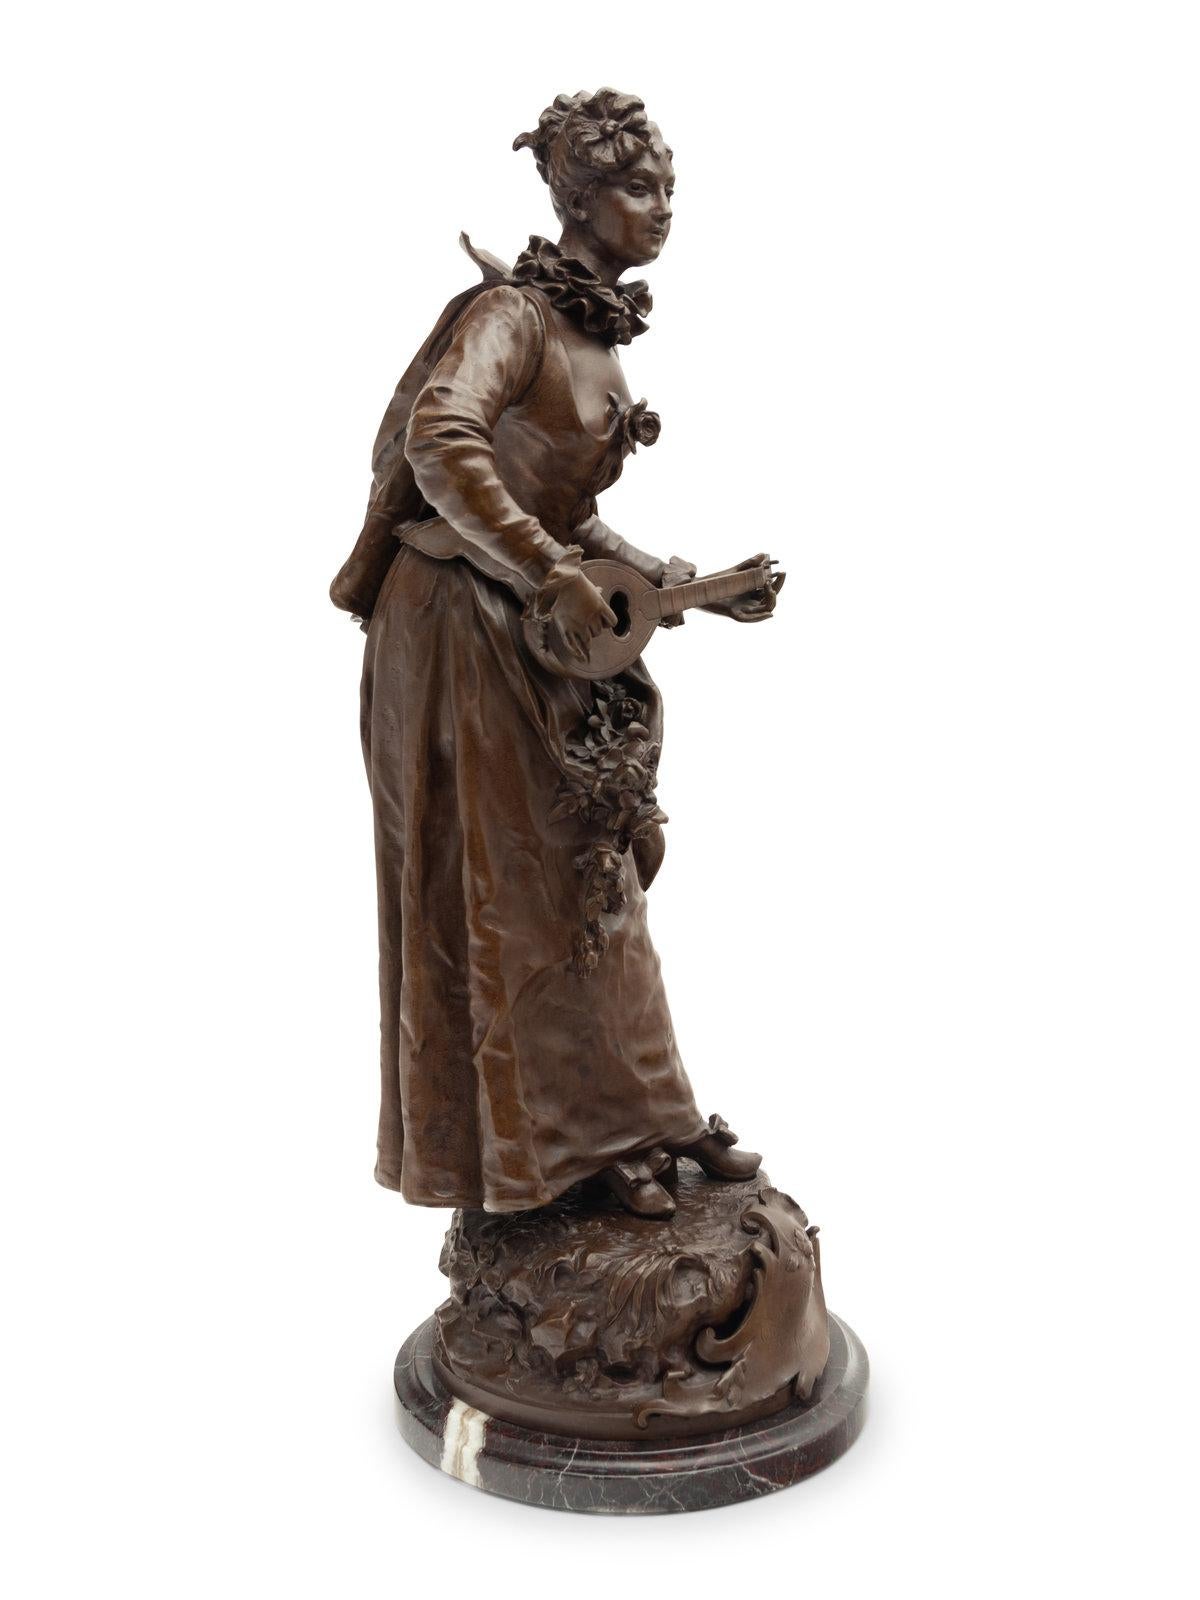 French Bronze Sculpture By Etienne Adrien Gaudez (1845 - 1902), 